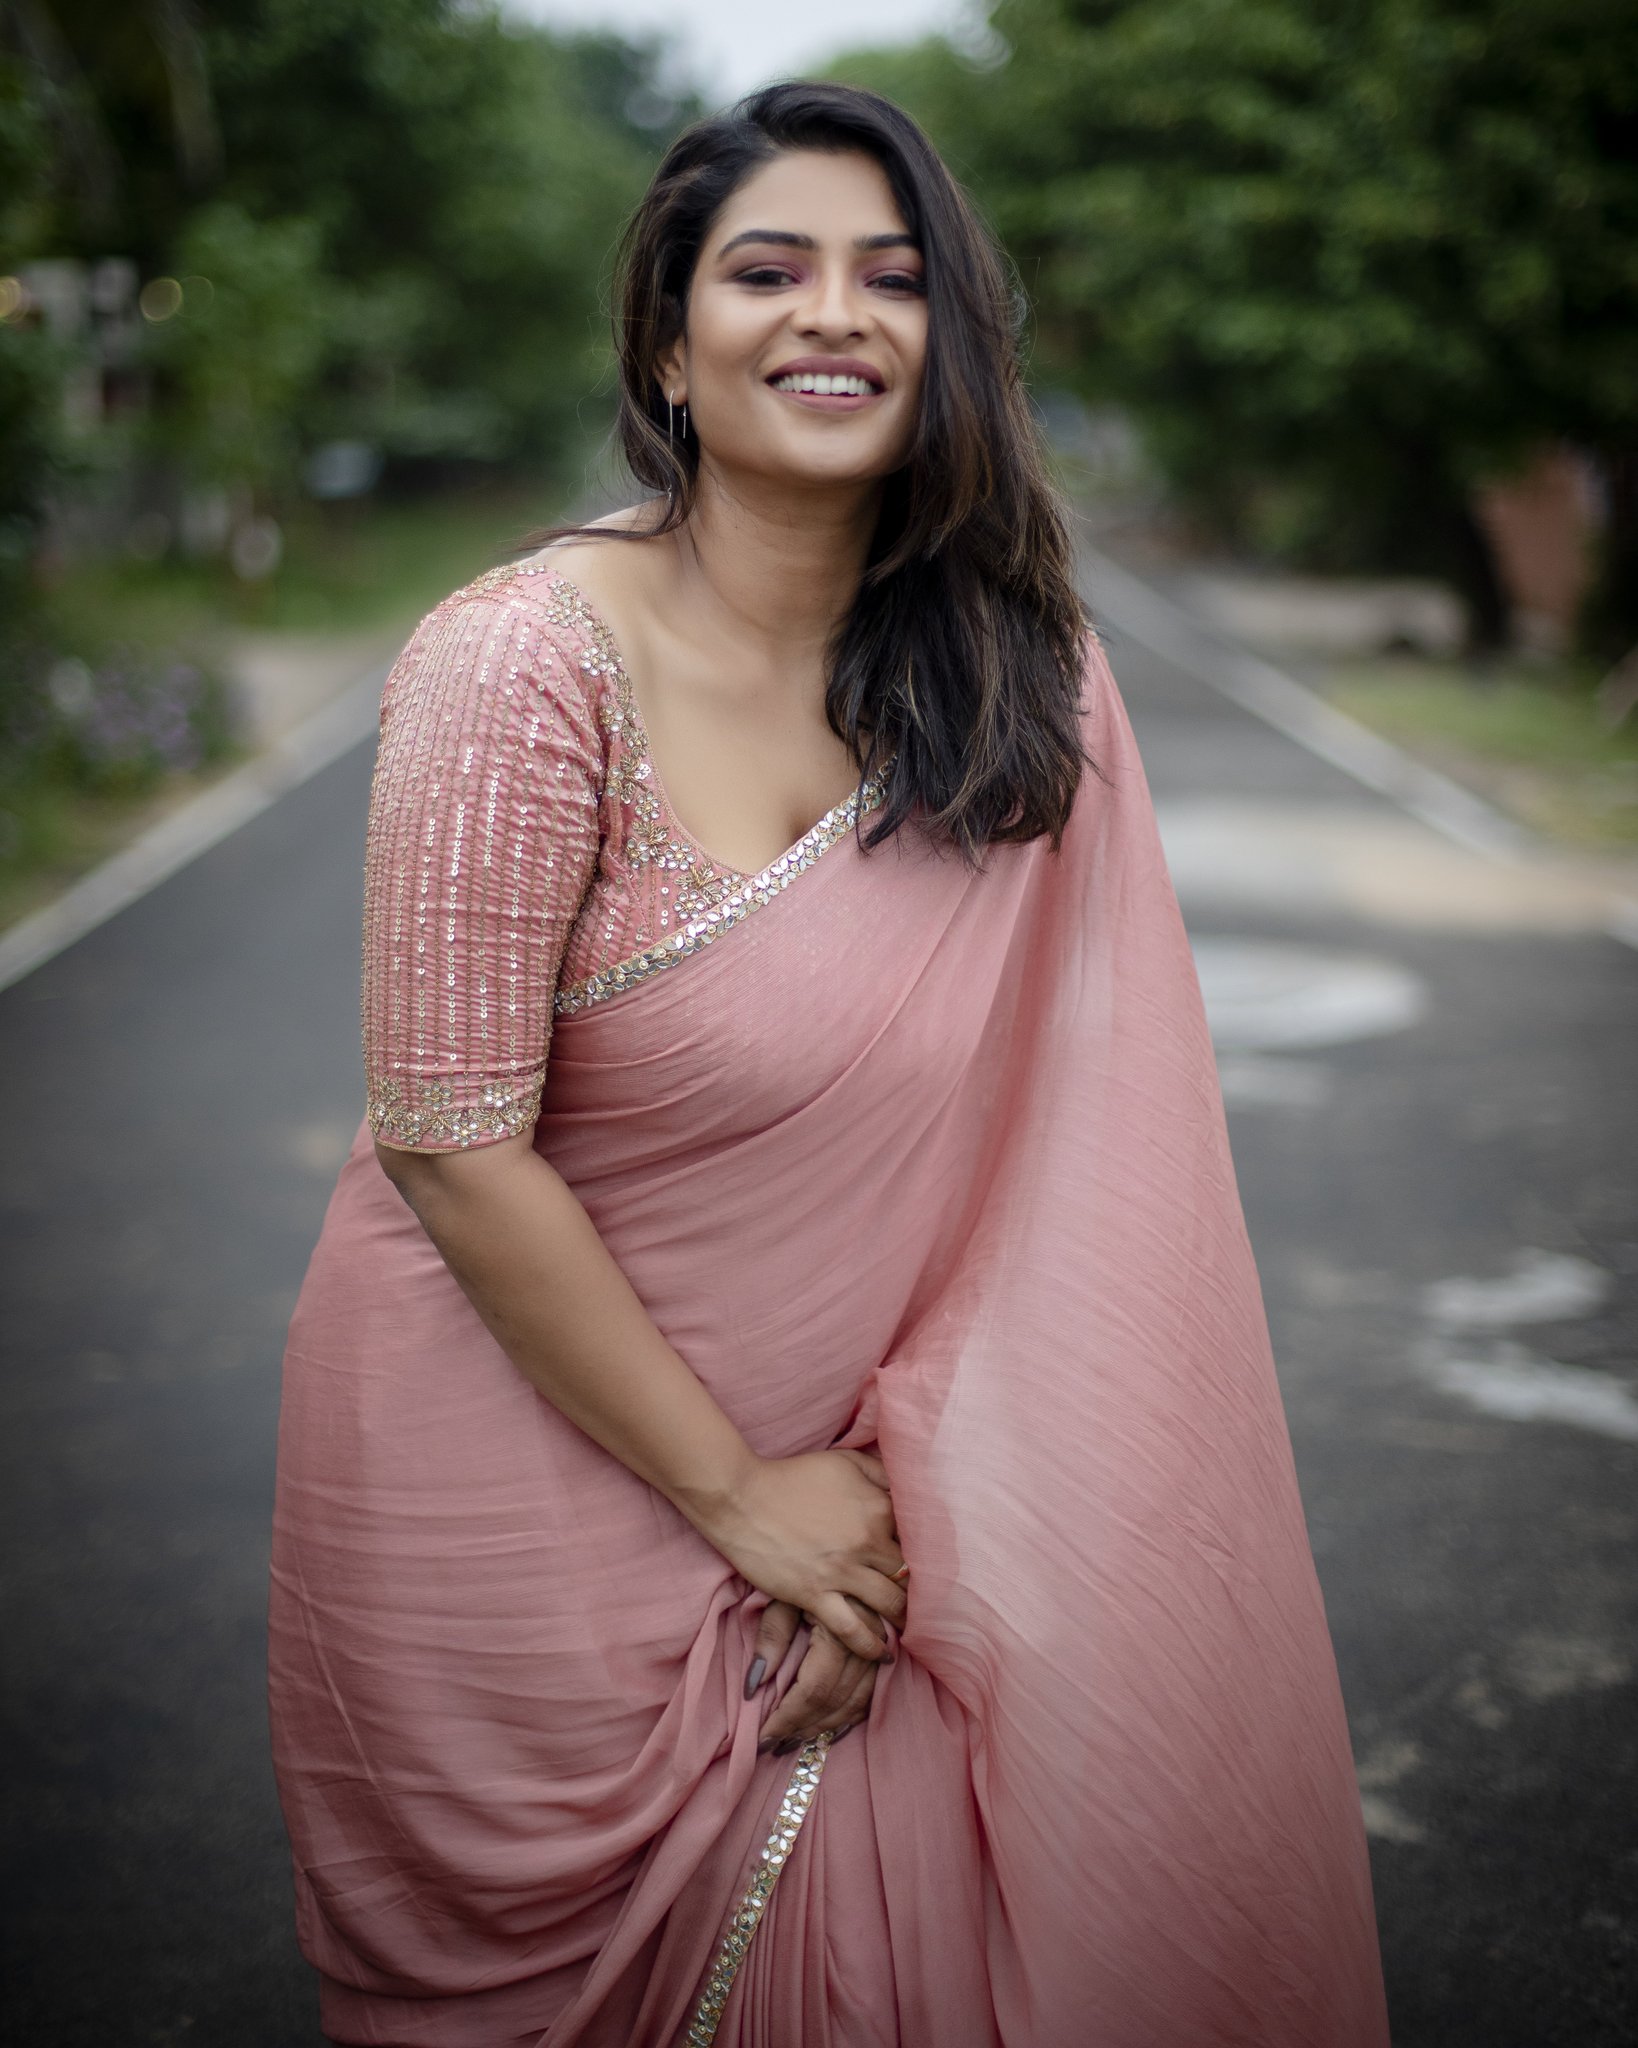 Tamil Serial Actress Maheswari